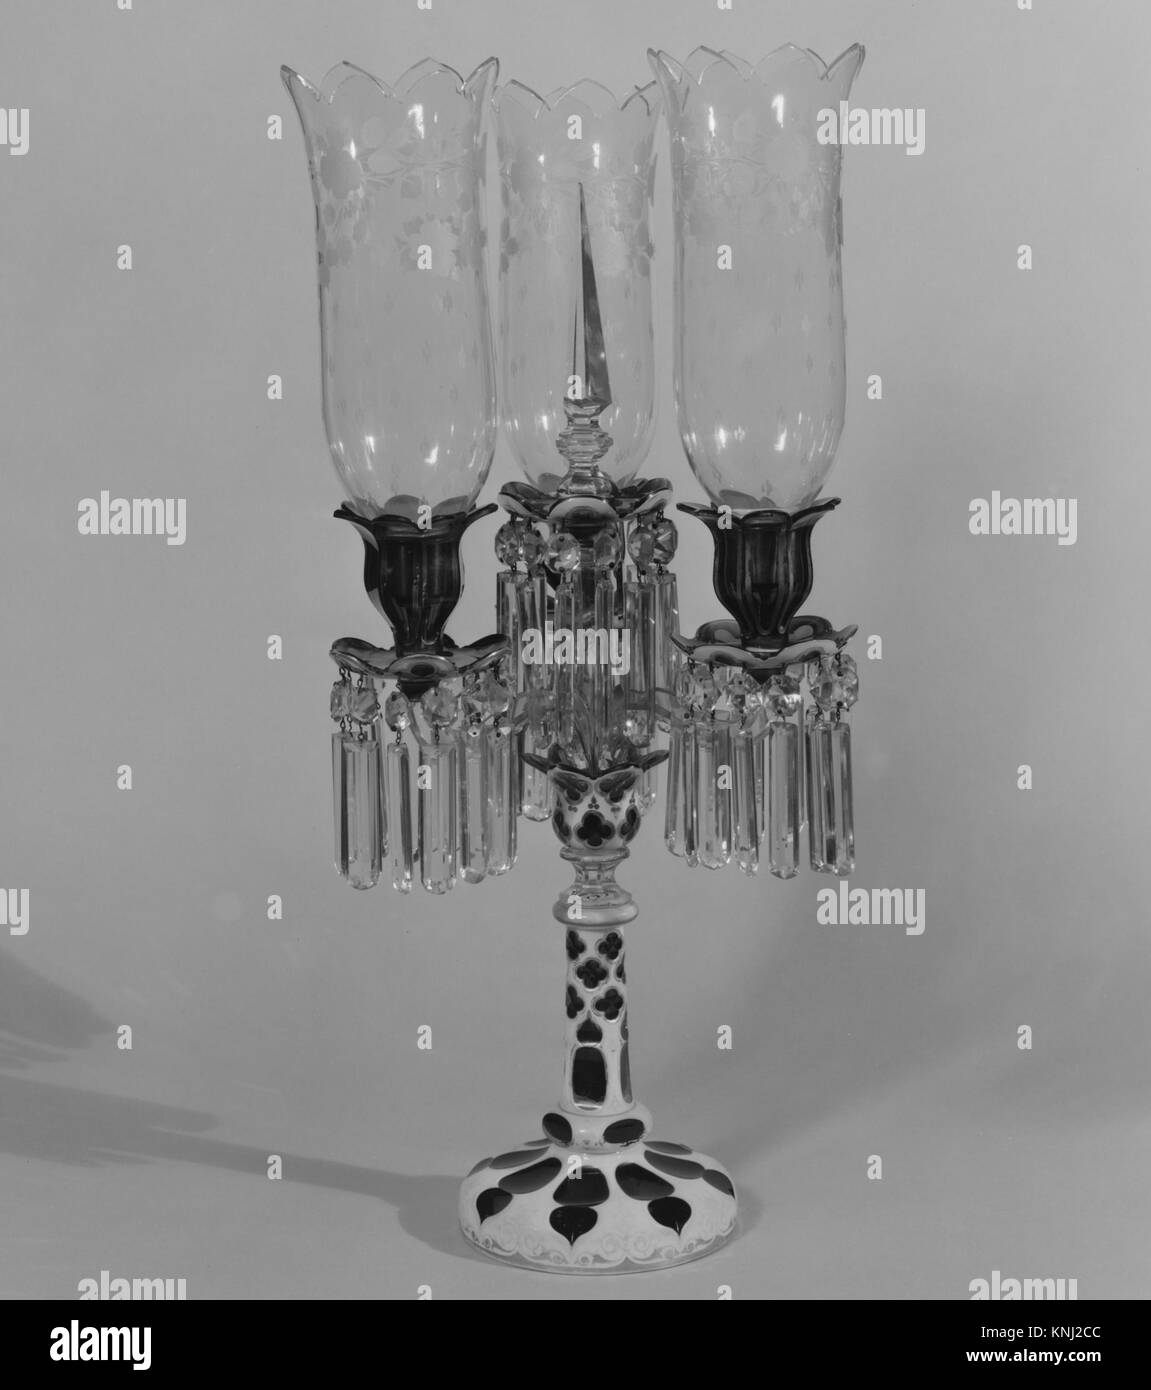 Kronleuchter, amerikanisch oder französisch, möglicherweise hergestellt in Frankreich; möglicherweise hergestellt in den USA, ca. 1840, Mittel: Geblasenes Glas Stockfoto